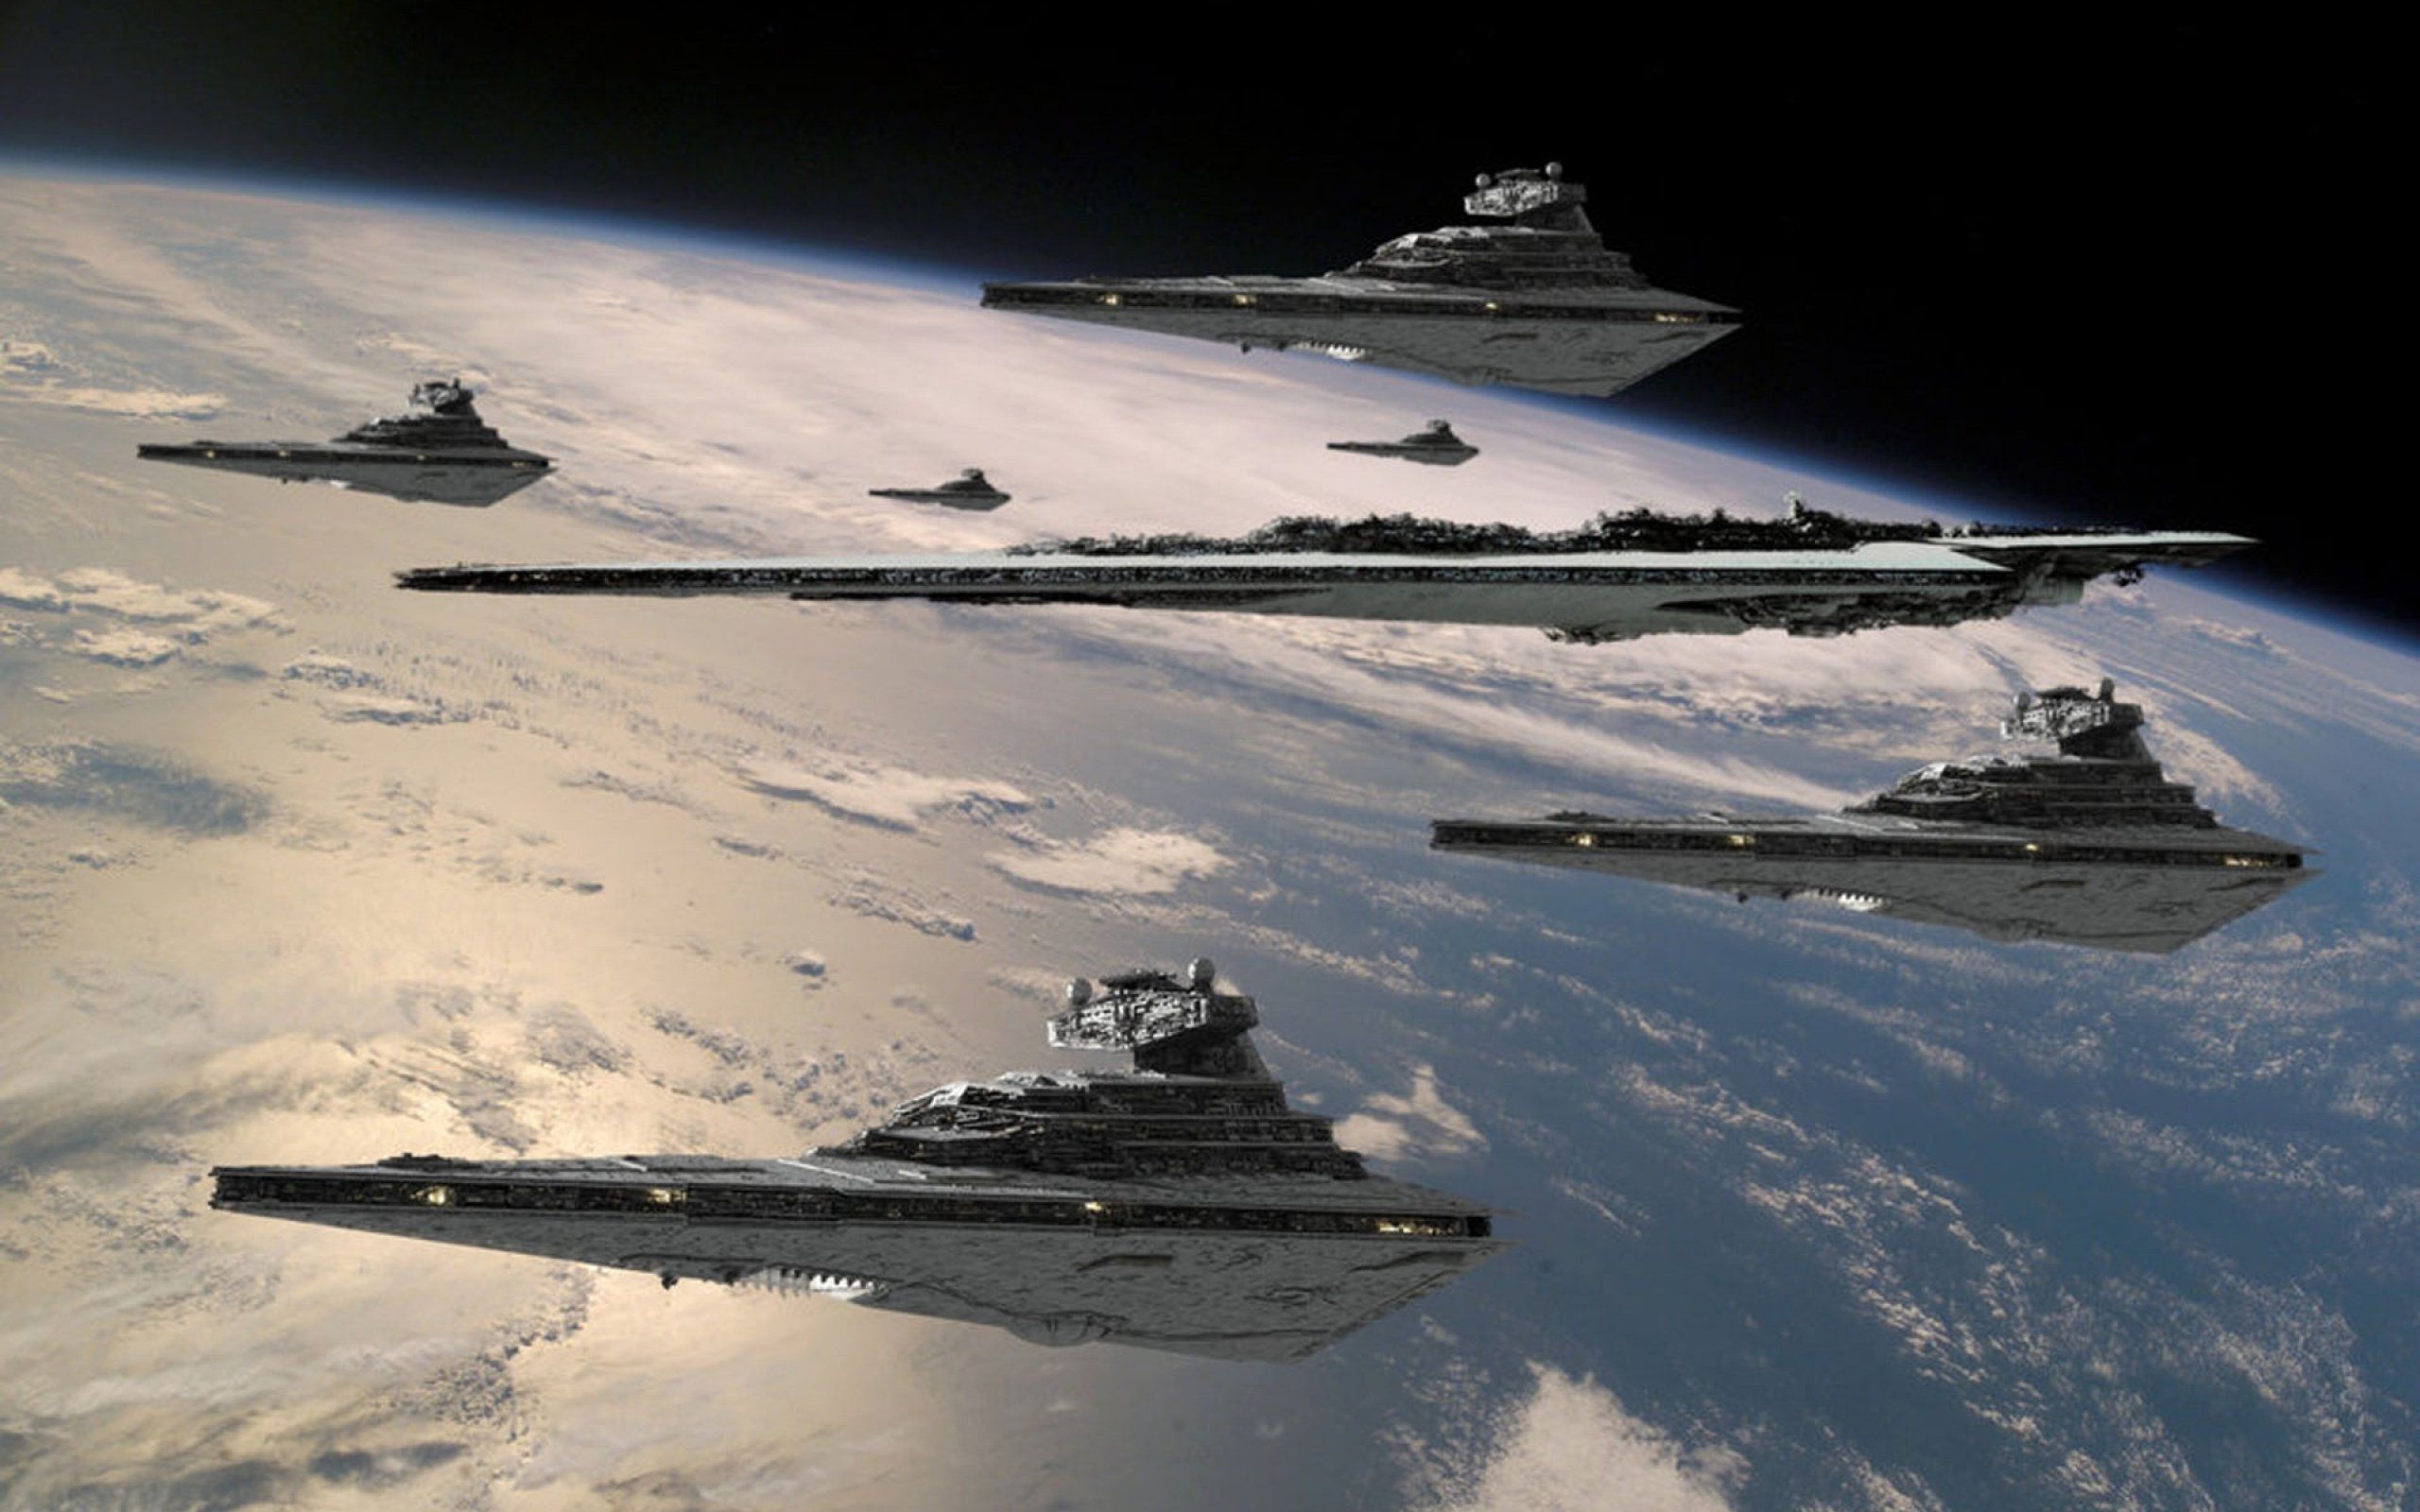 Is Star Wars science coming true?